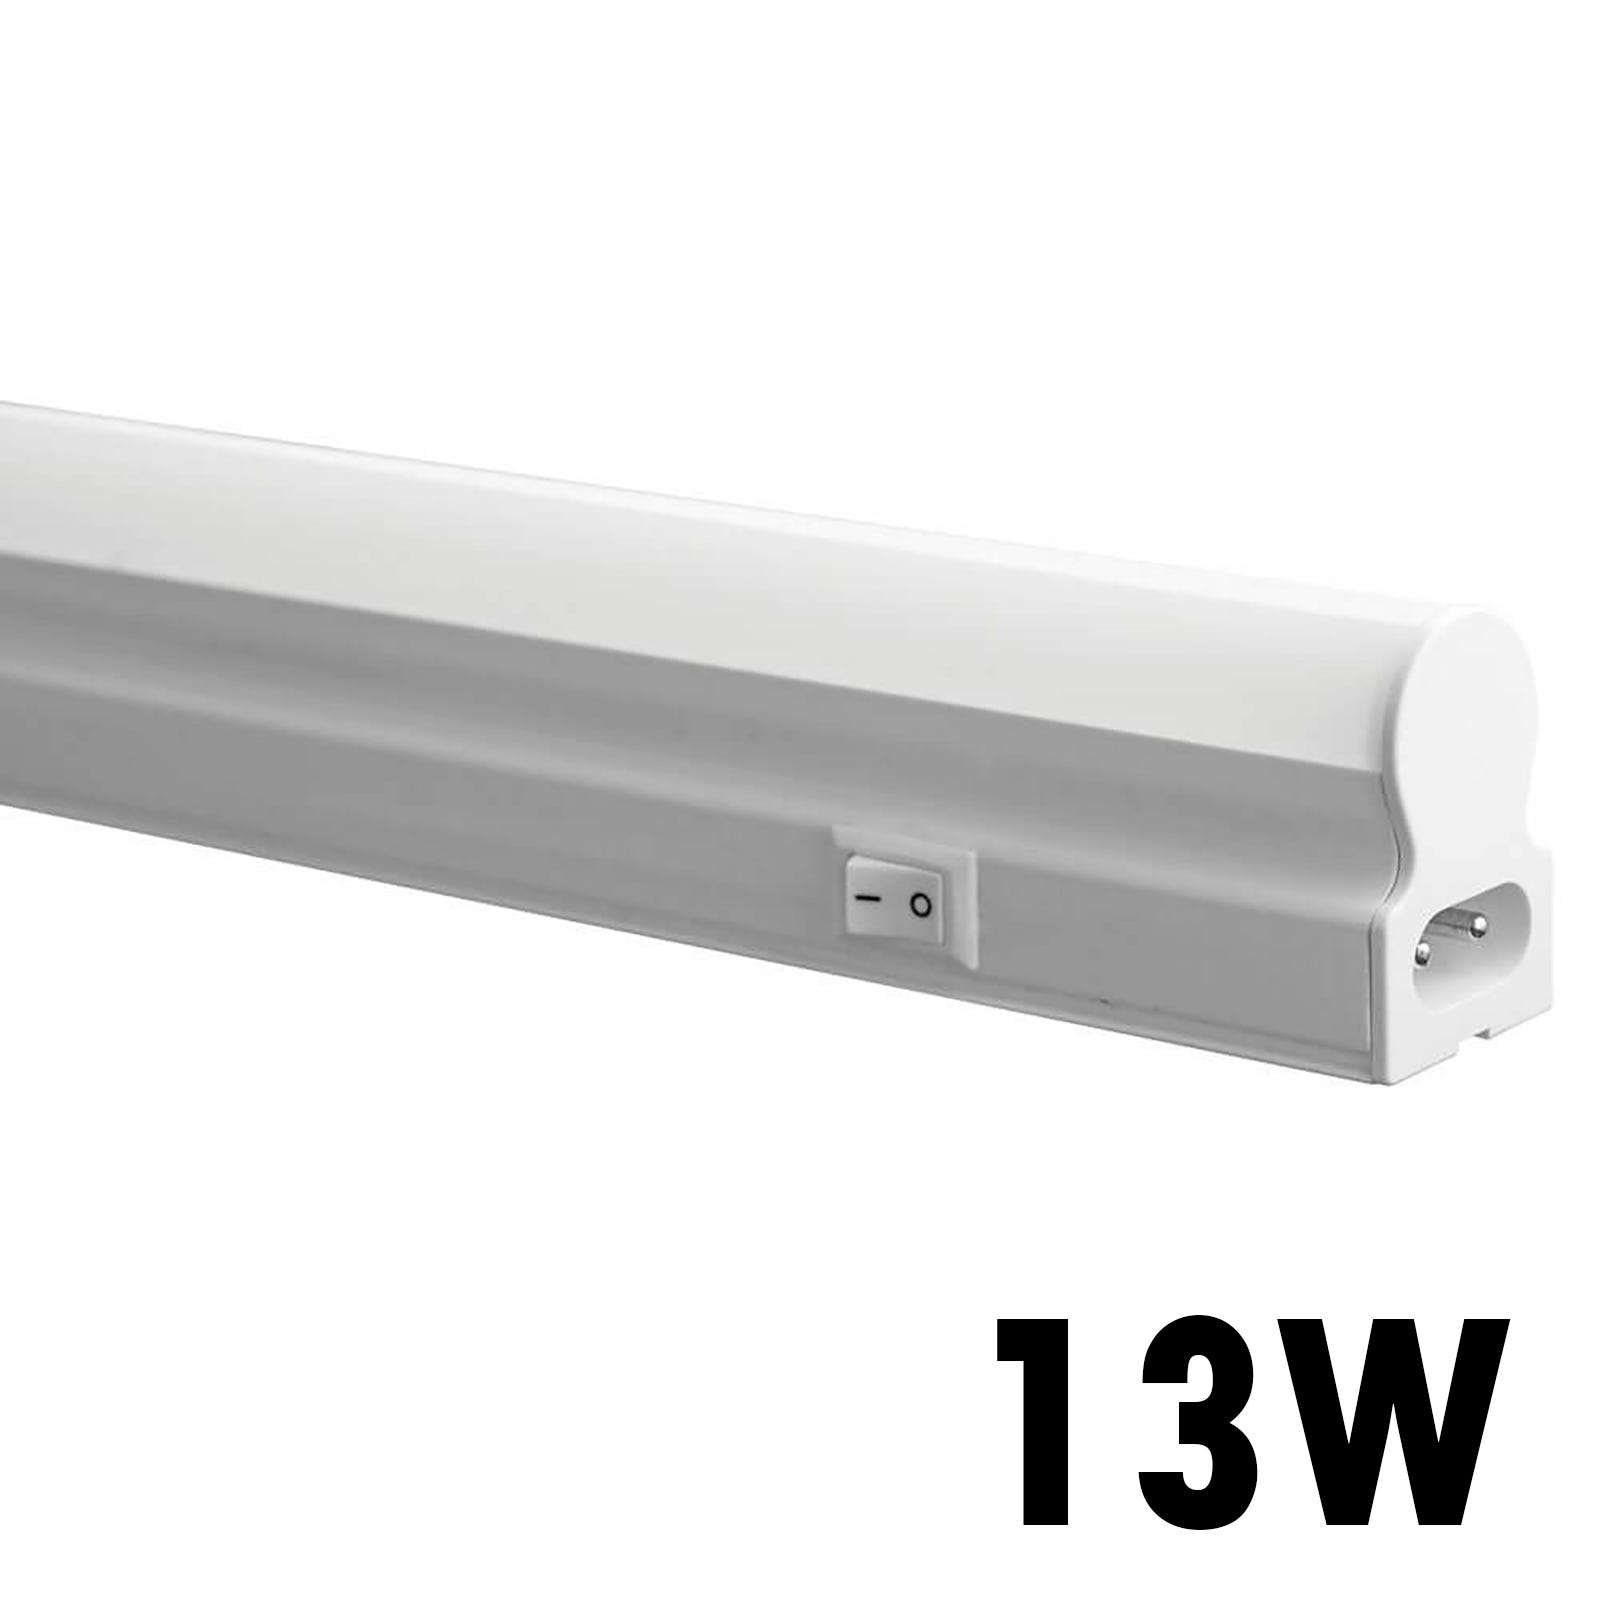 Neon led t5 plafoniera sottopensile 90cm 13w lampada reglette tubo